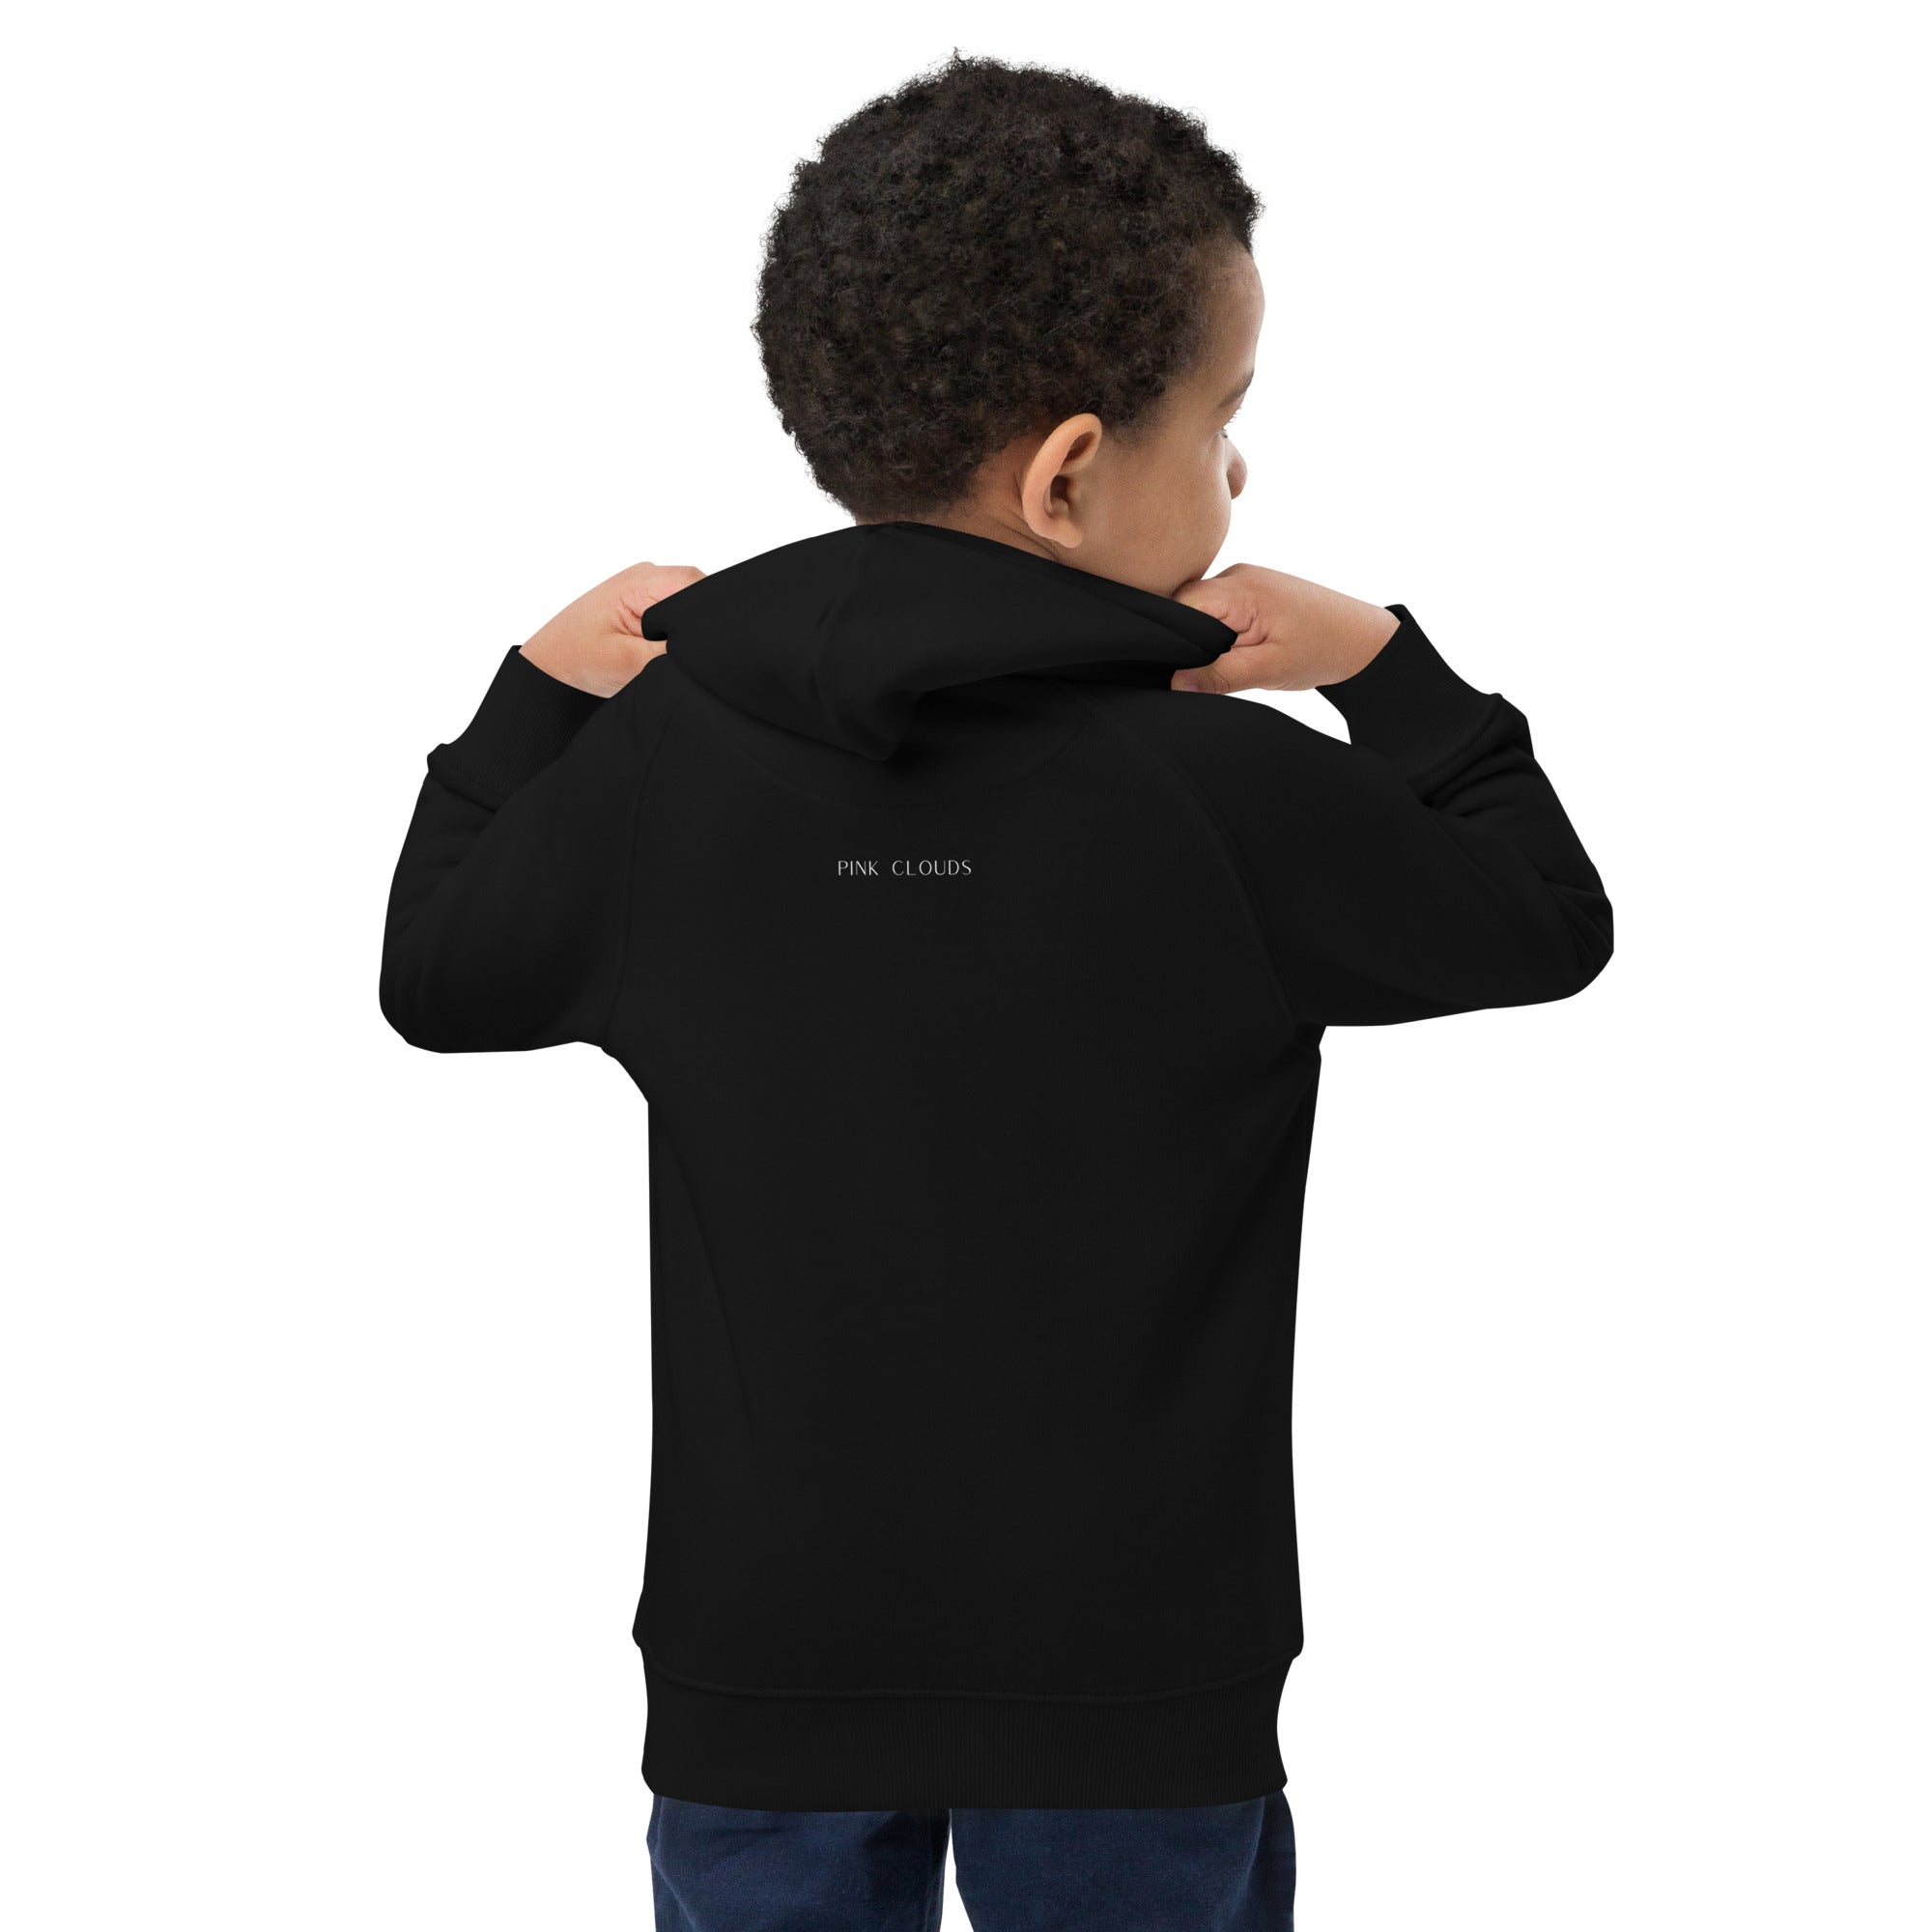 Be brave - Kids eco hoodie